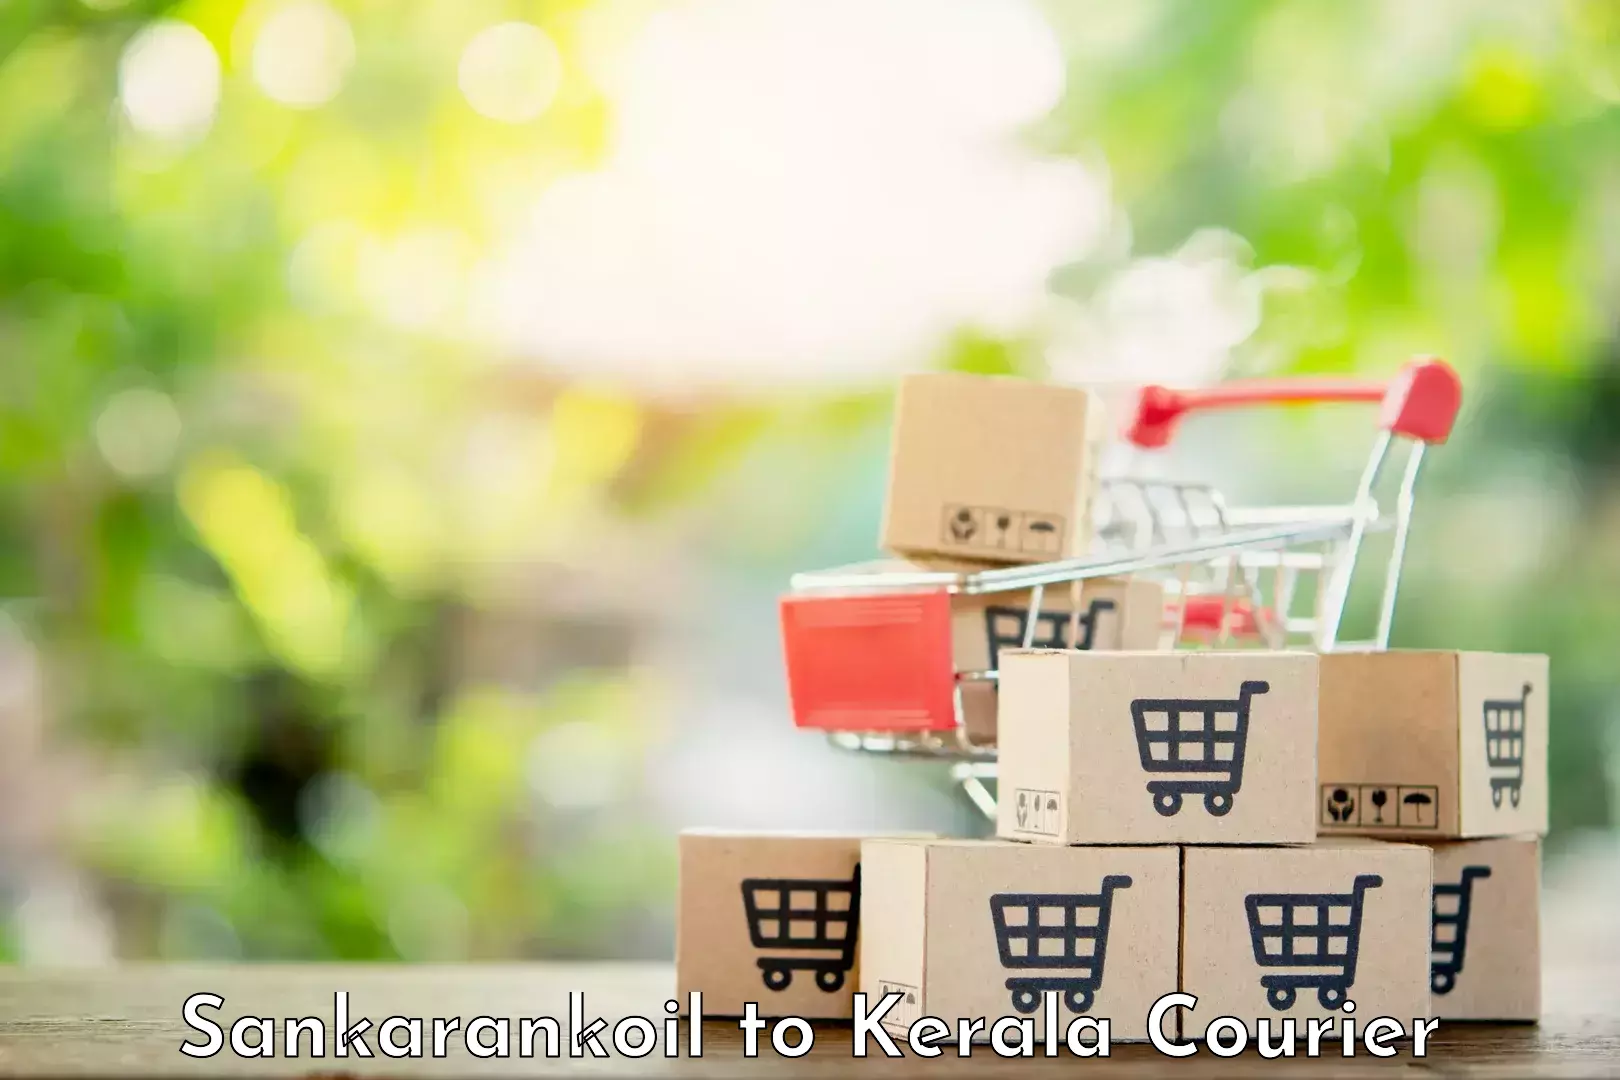 Flexible courier rates Sankarankoil to Kerala